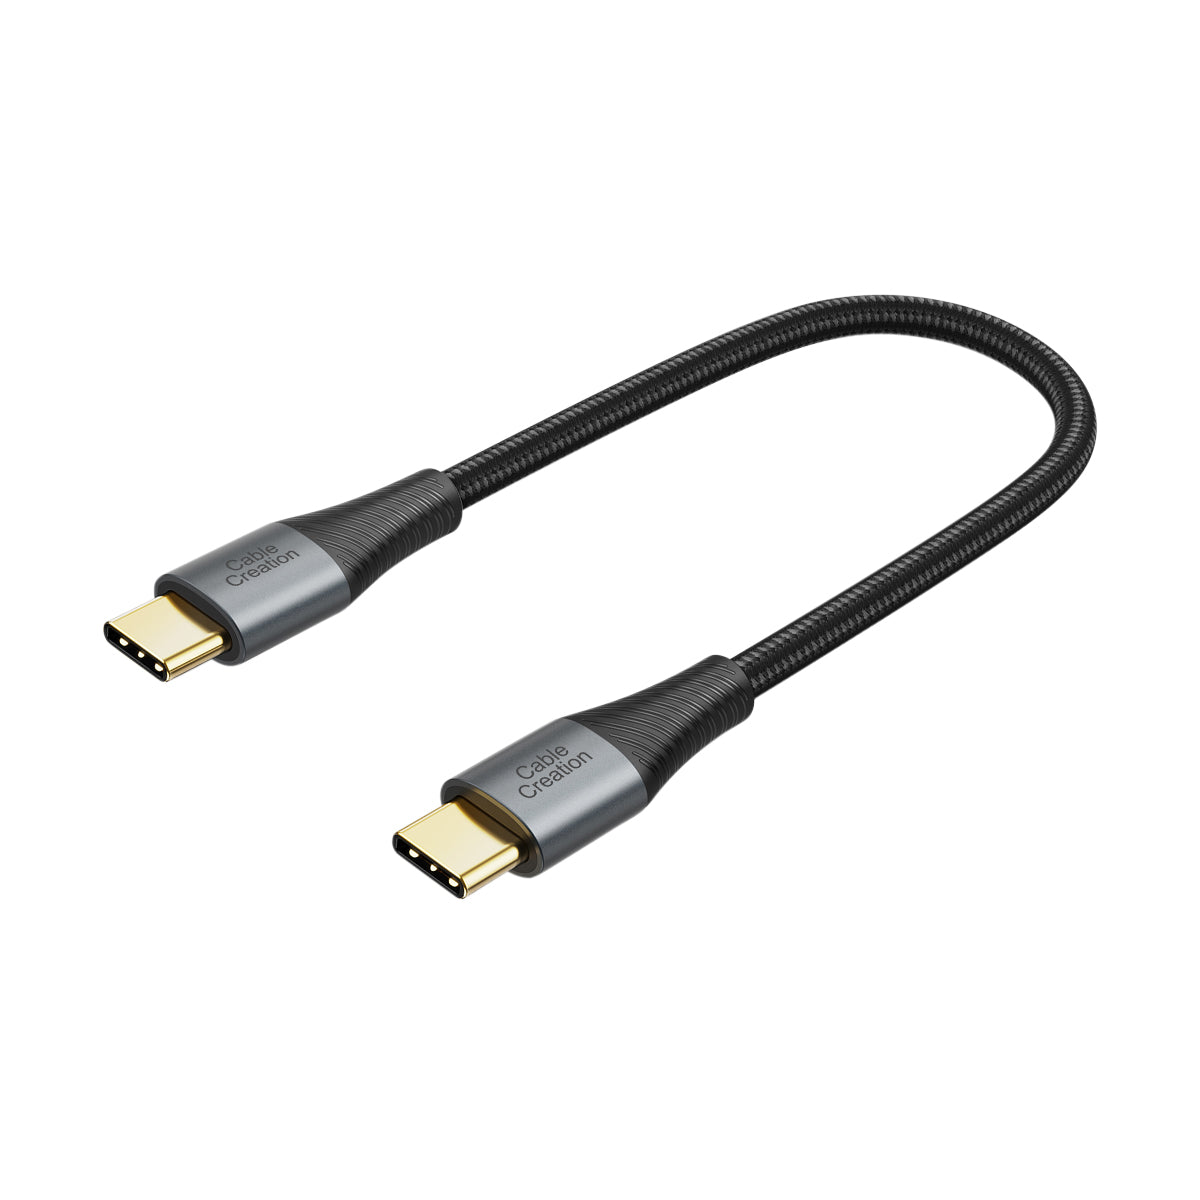 CableCreation Cable corto micro USB a USB C de 0.65 pies USB C a Micro USB  OTG 480 Mbps tipo C a Micro USB, USB C a USB Micro Compatible con MacBook